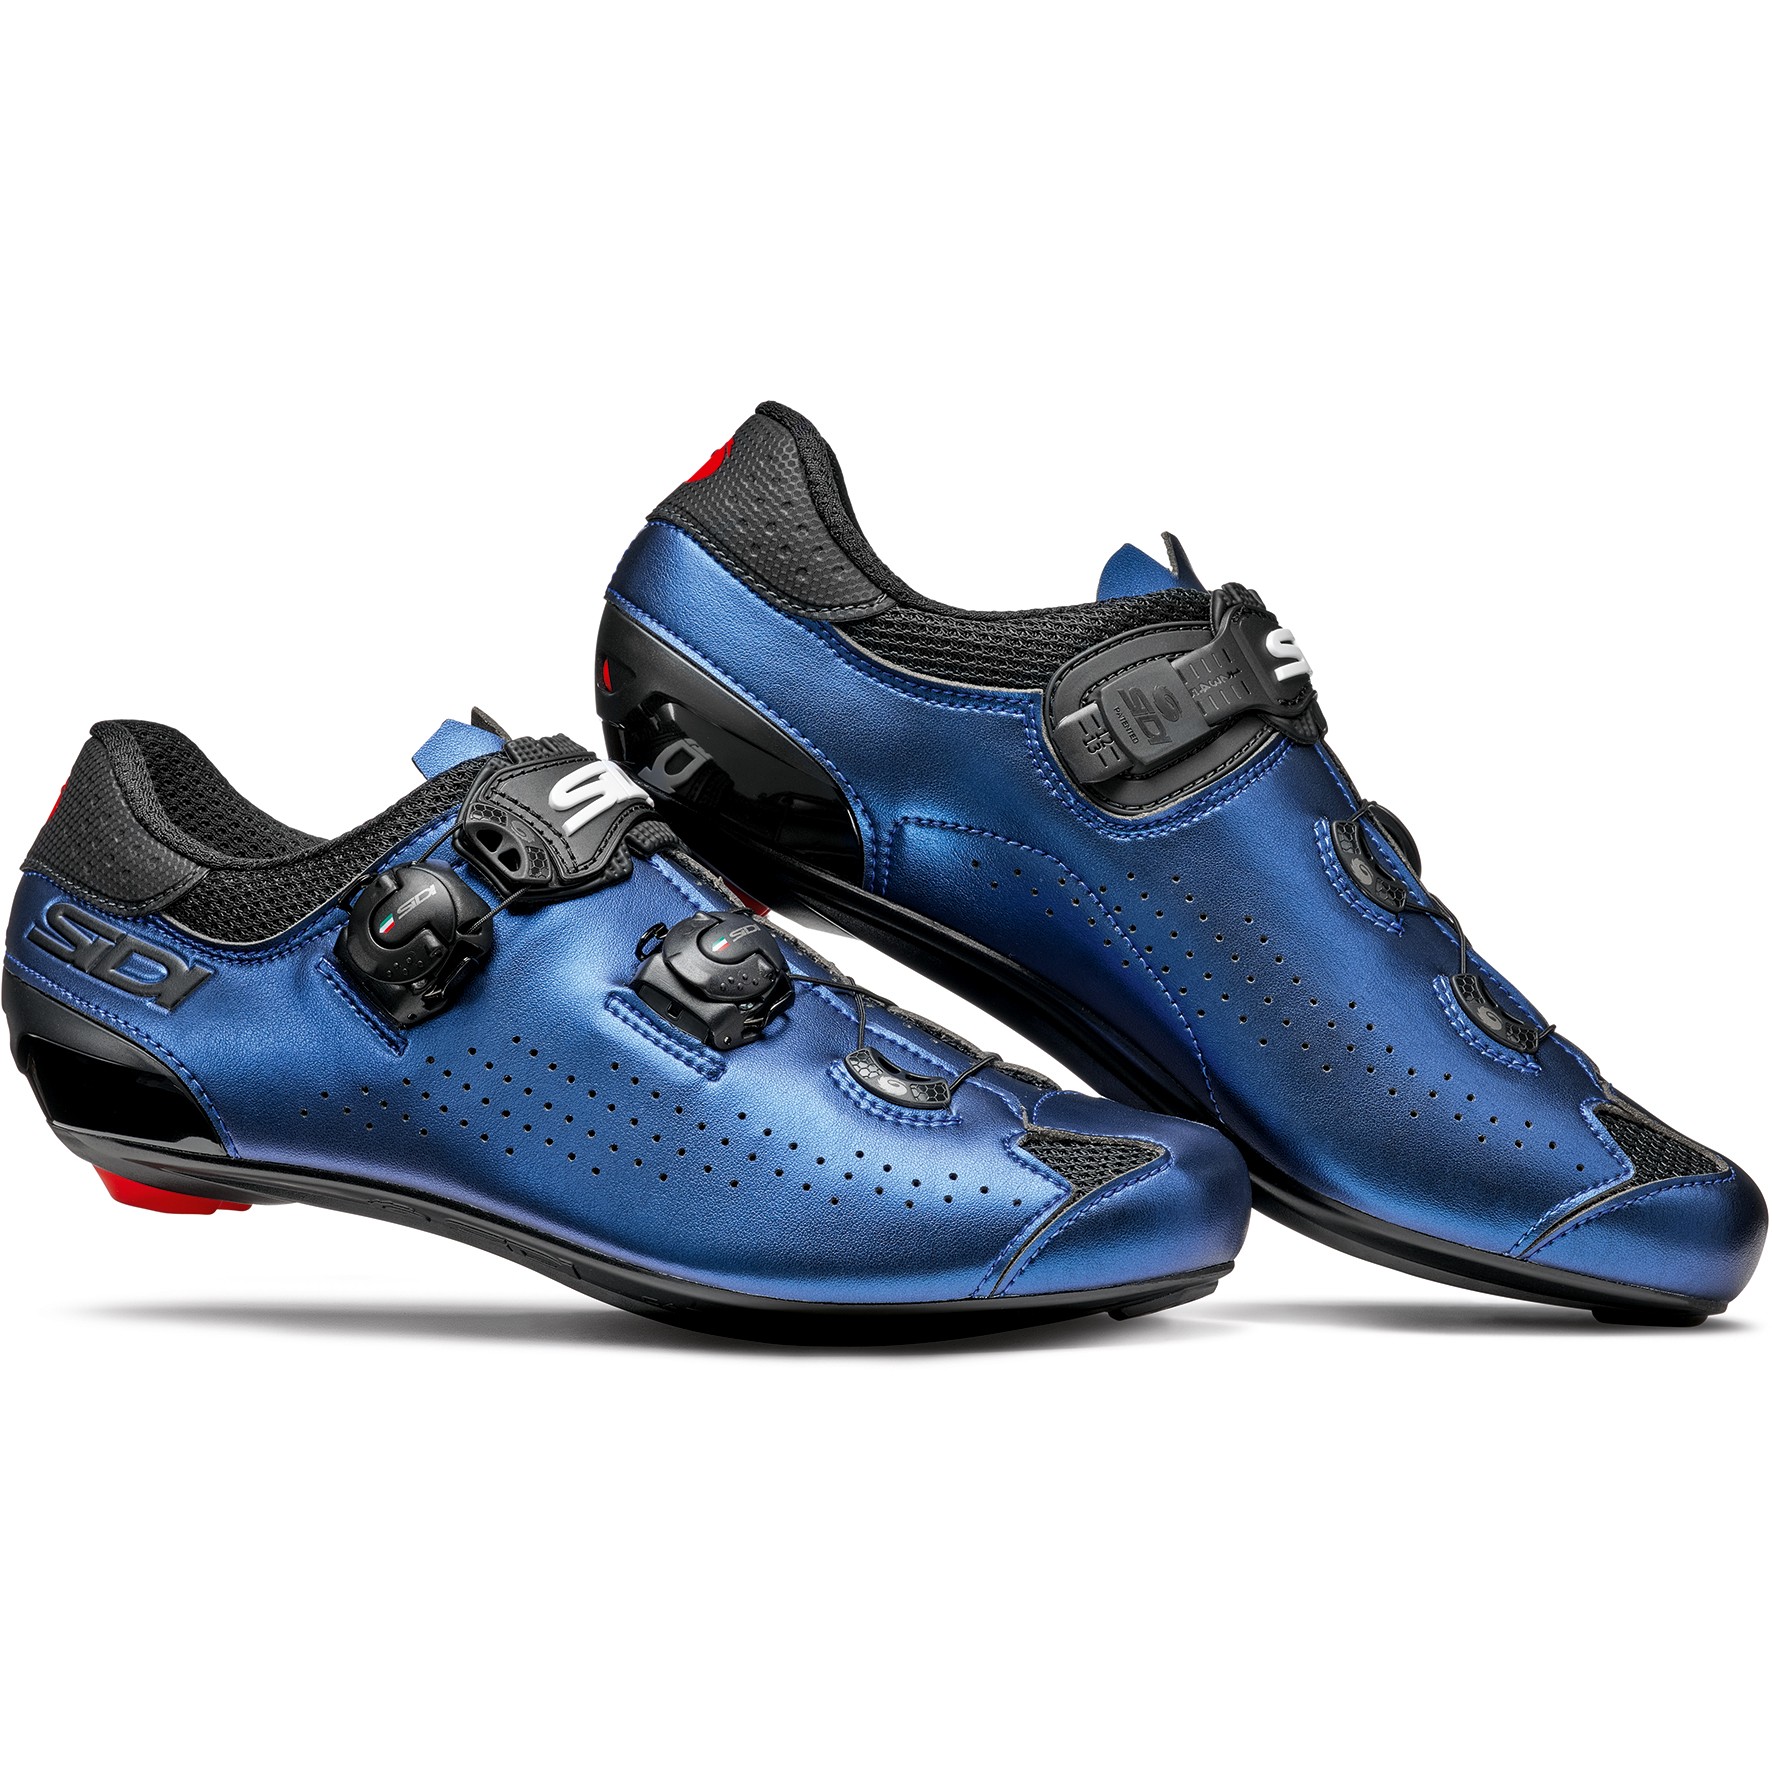 Produktbild von Sidi Genius 10 Rennradschuhe - iridescent blue